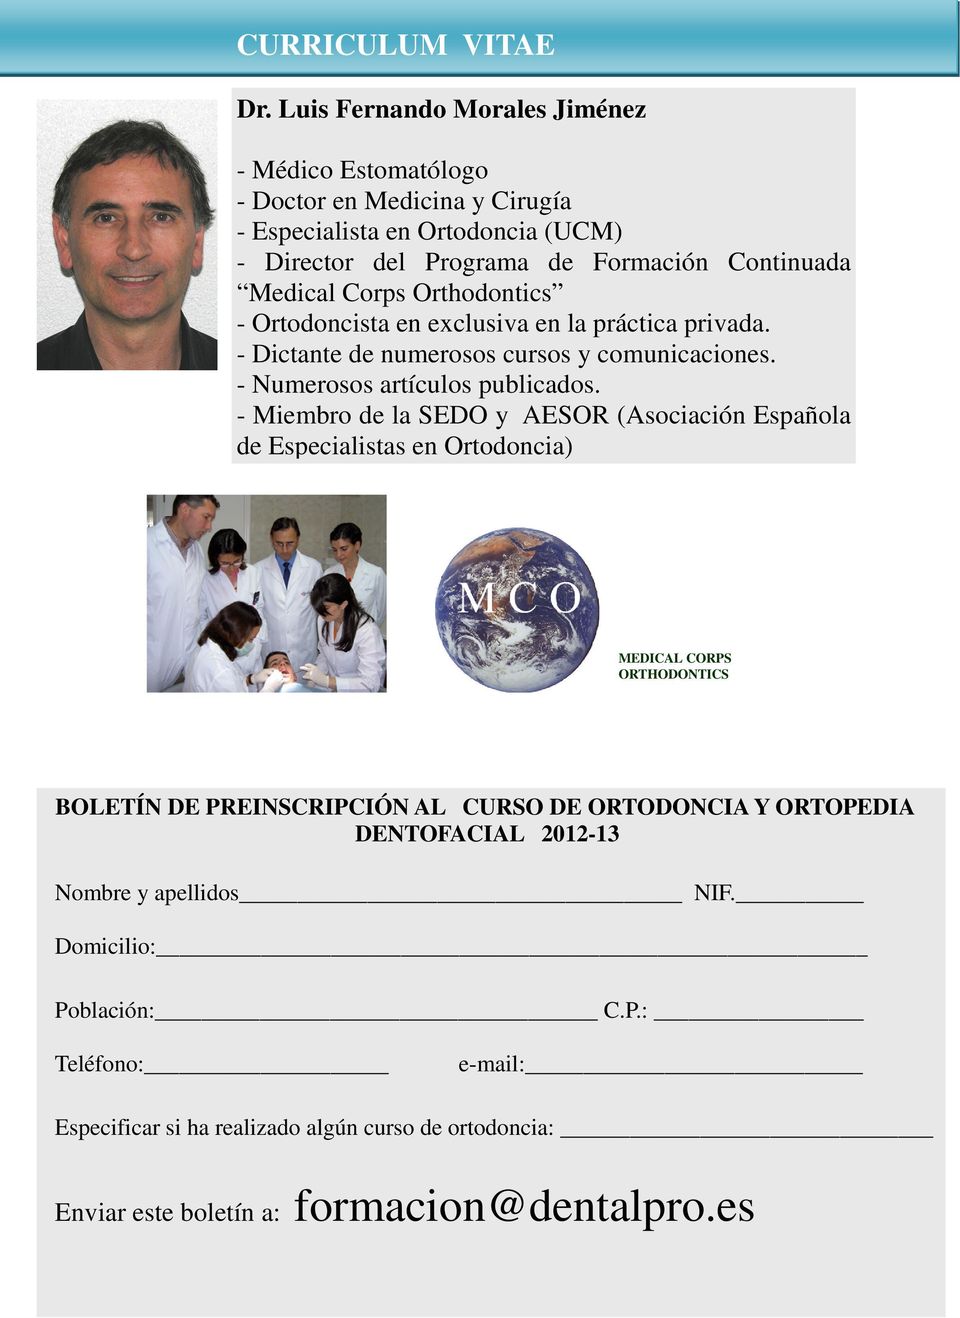 Corps Orthodontics - Ortodoncista en exclusiva en la práctica privada. - Dictante de numerosos cursos y comunicaciones. - Numerosos artículos publicados.